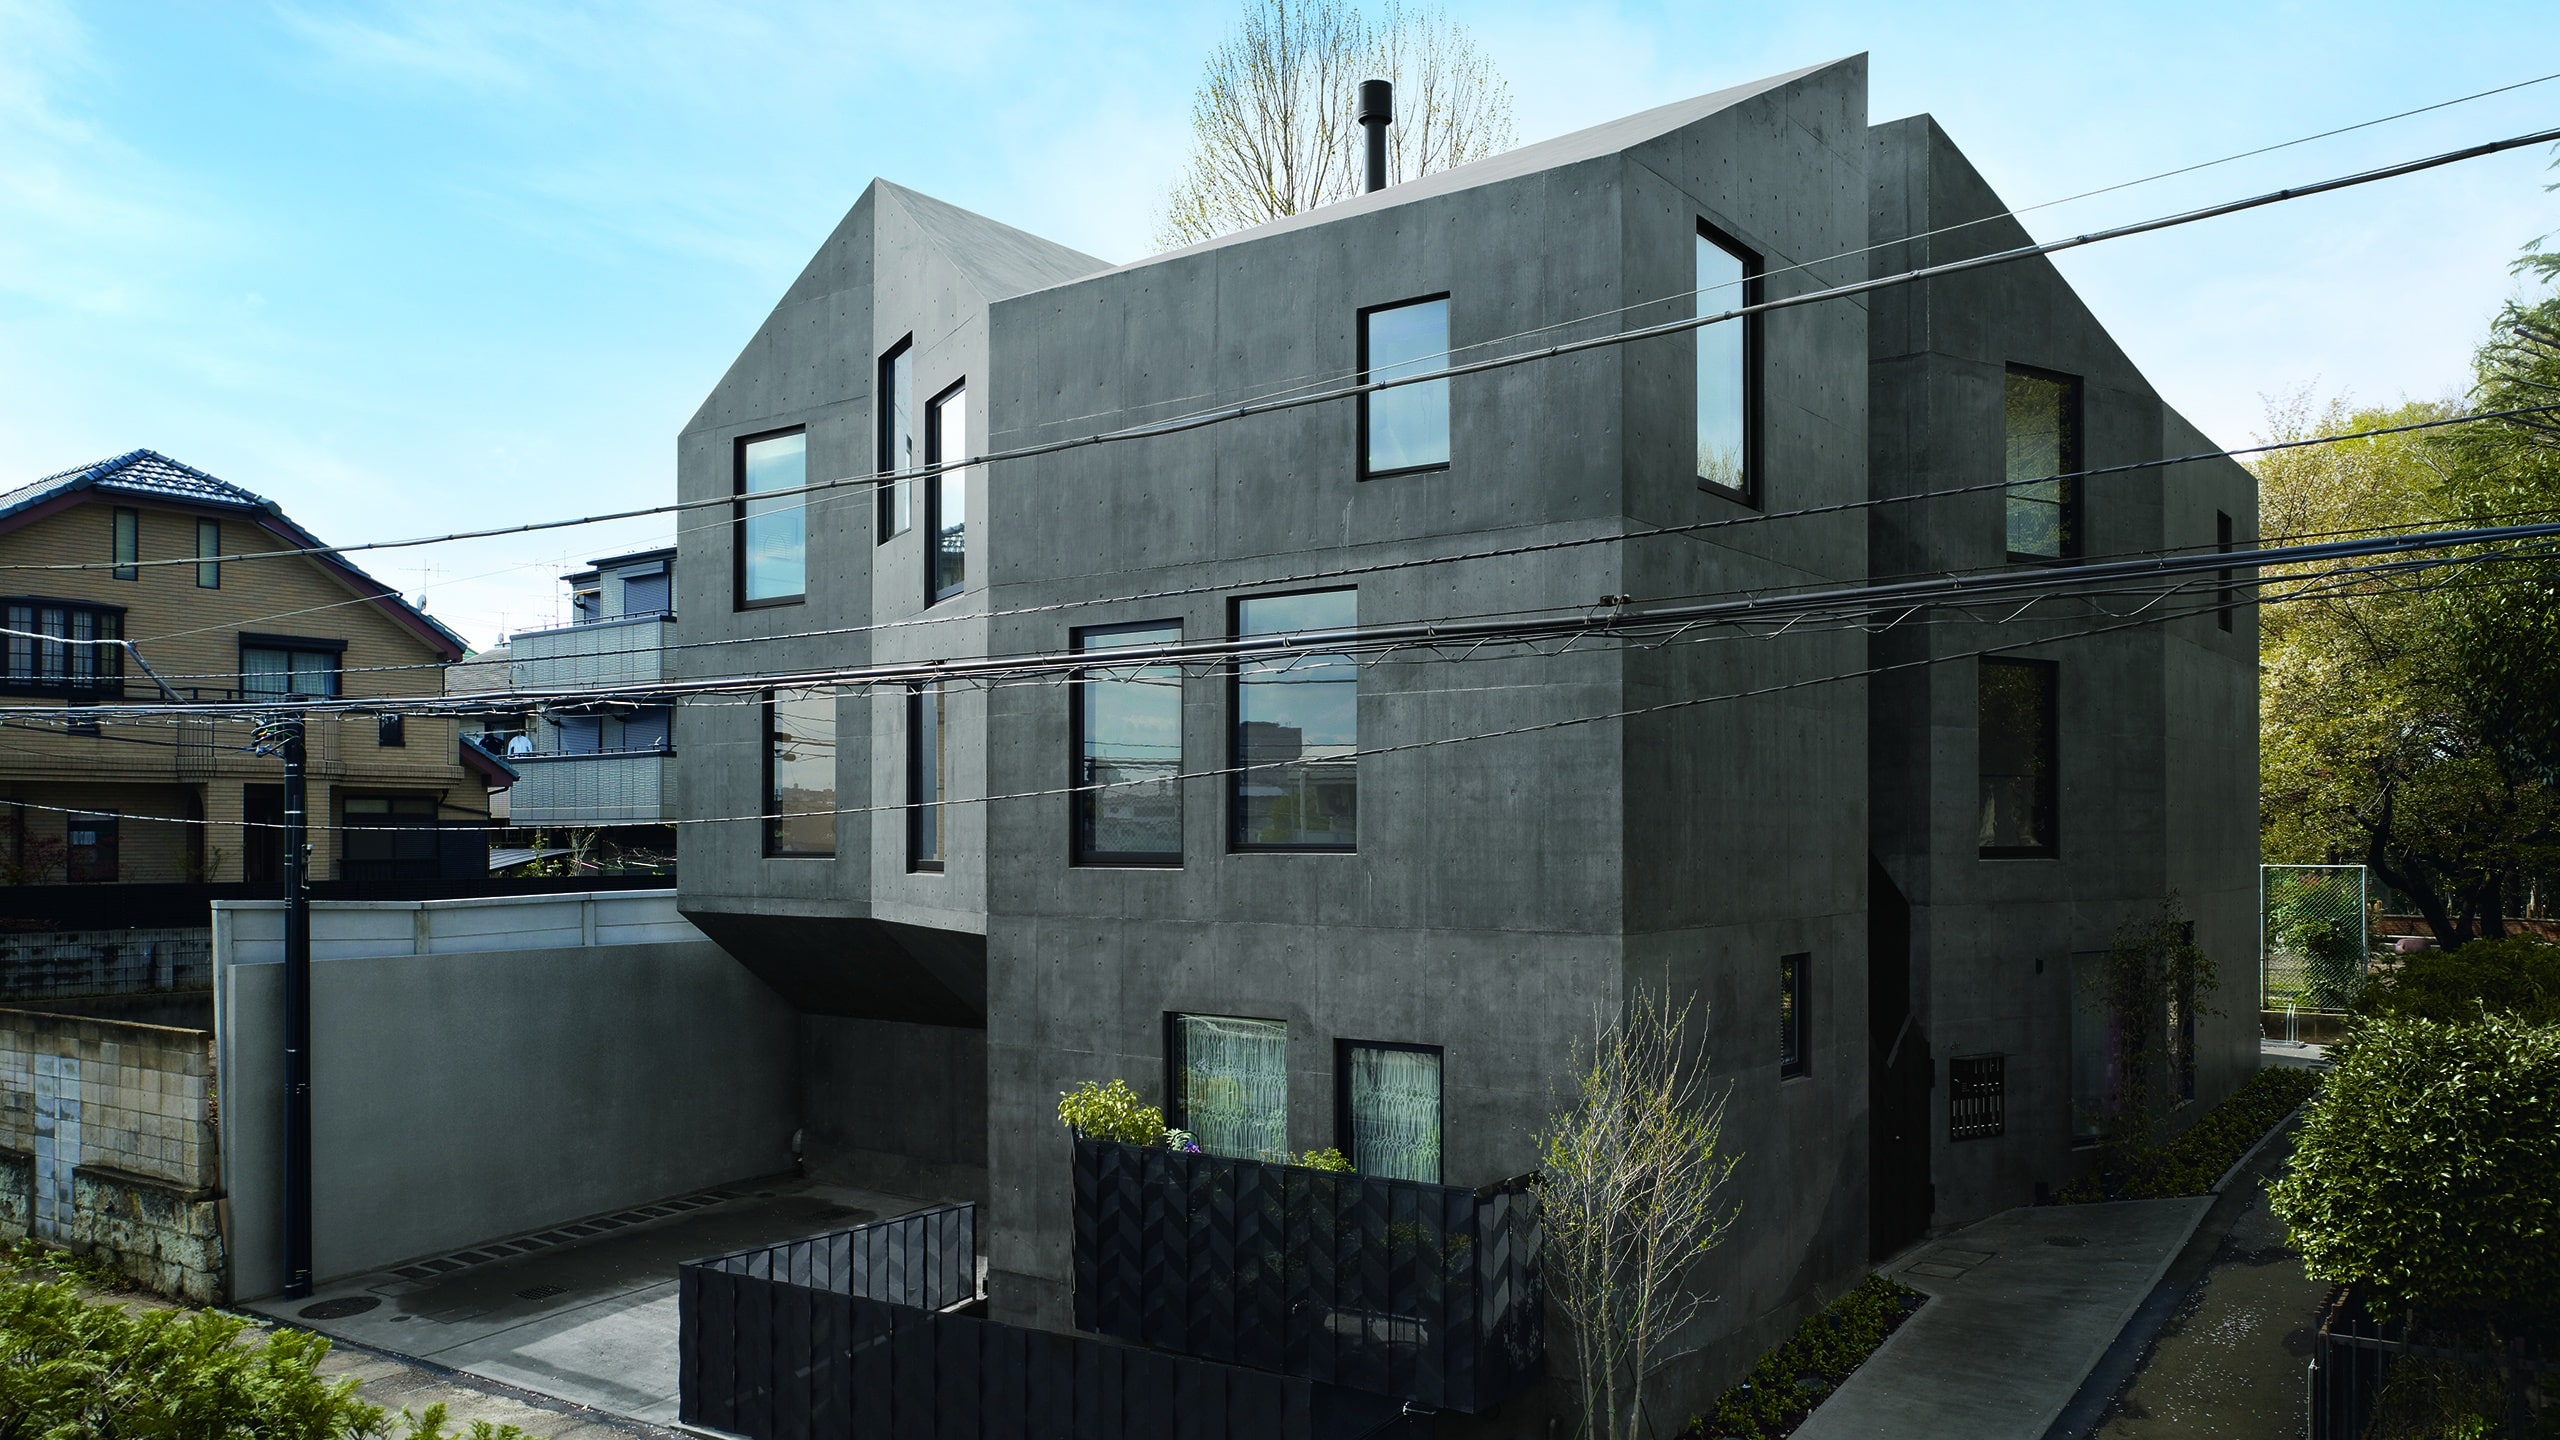 coloured concrete house made of precast panels.